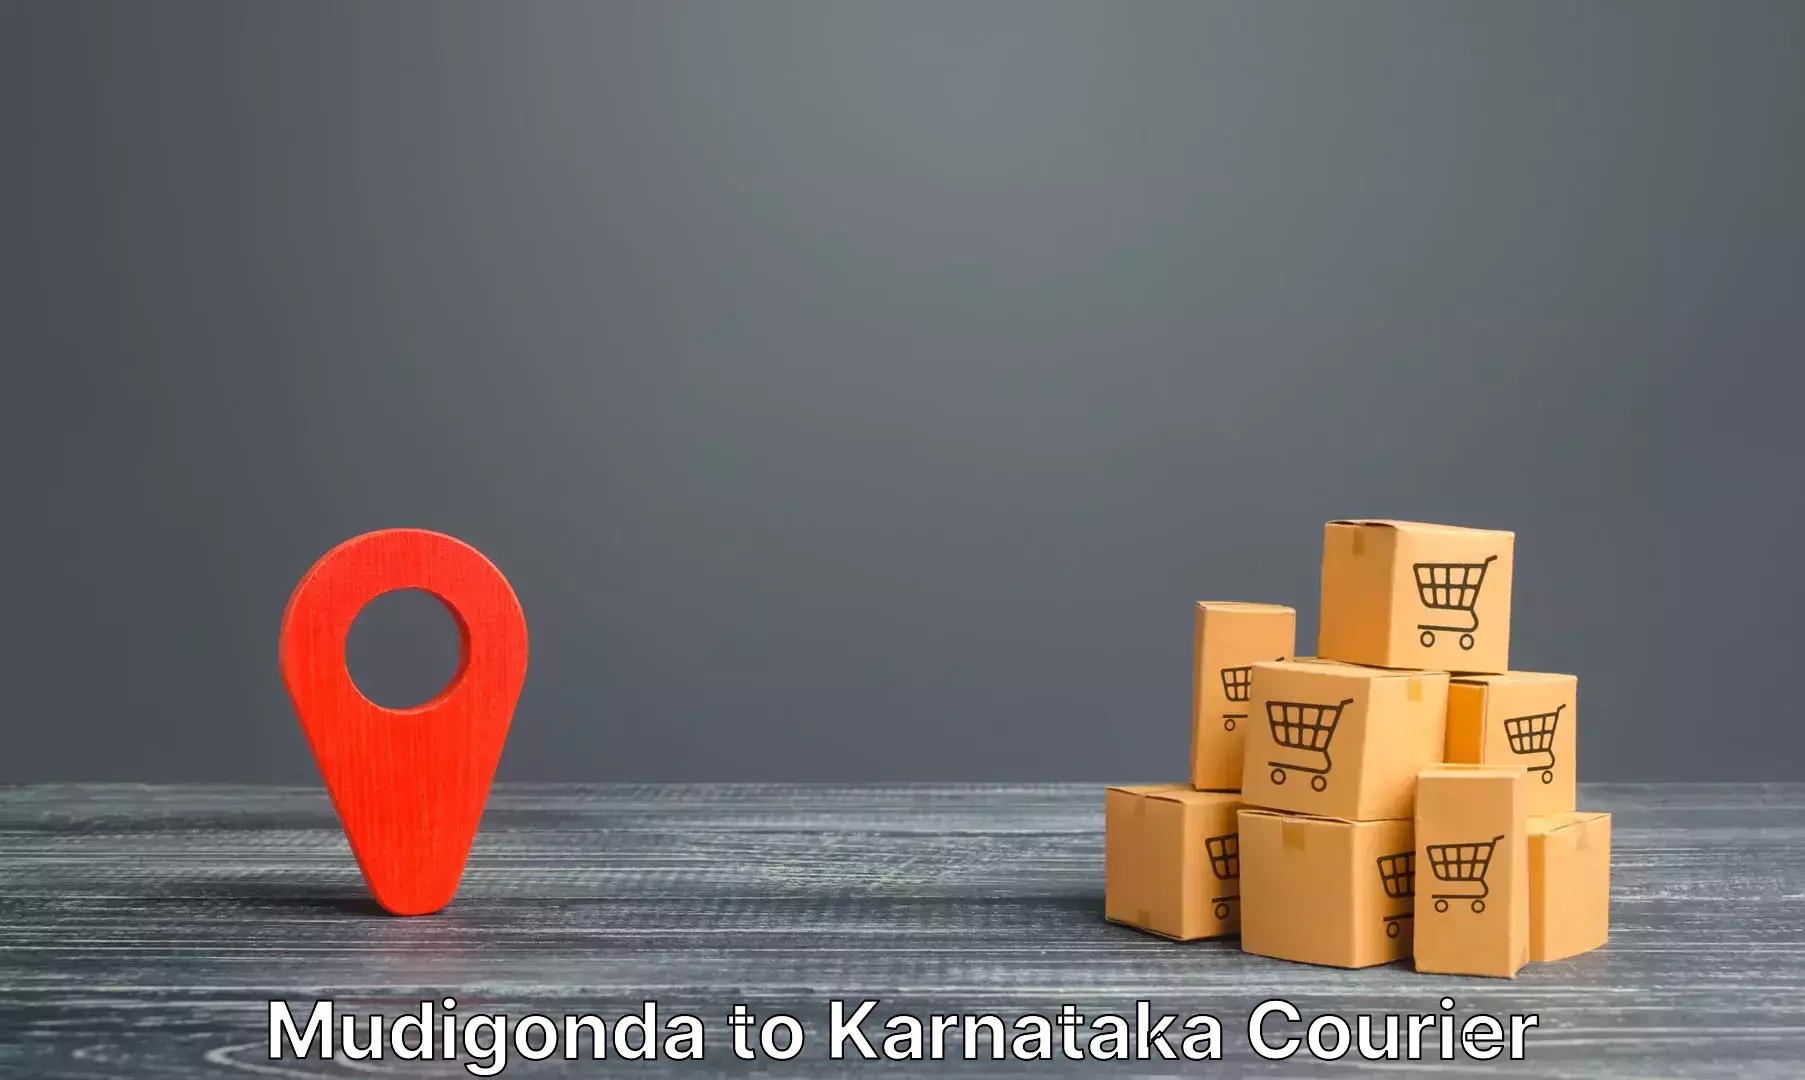 Electronic items luggage shipping Mudigonda to Mangalore